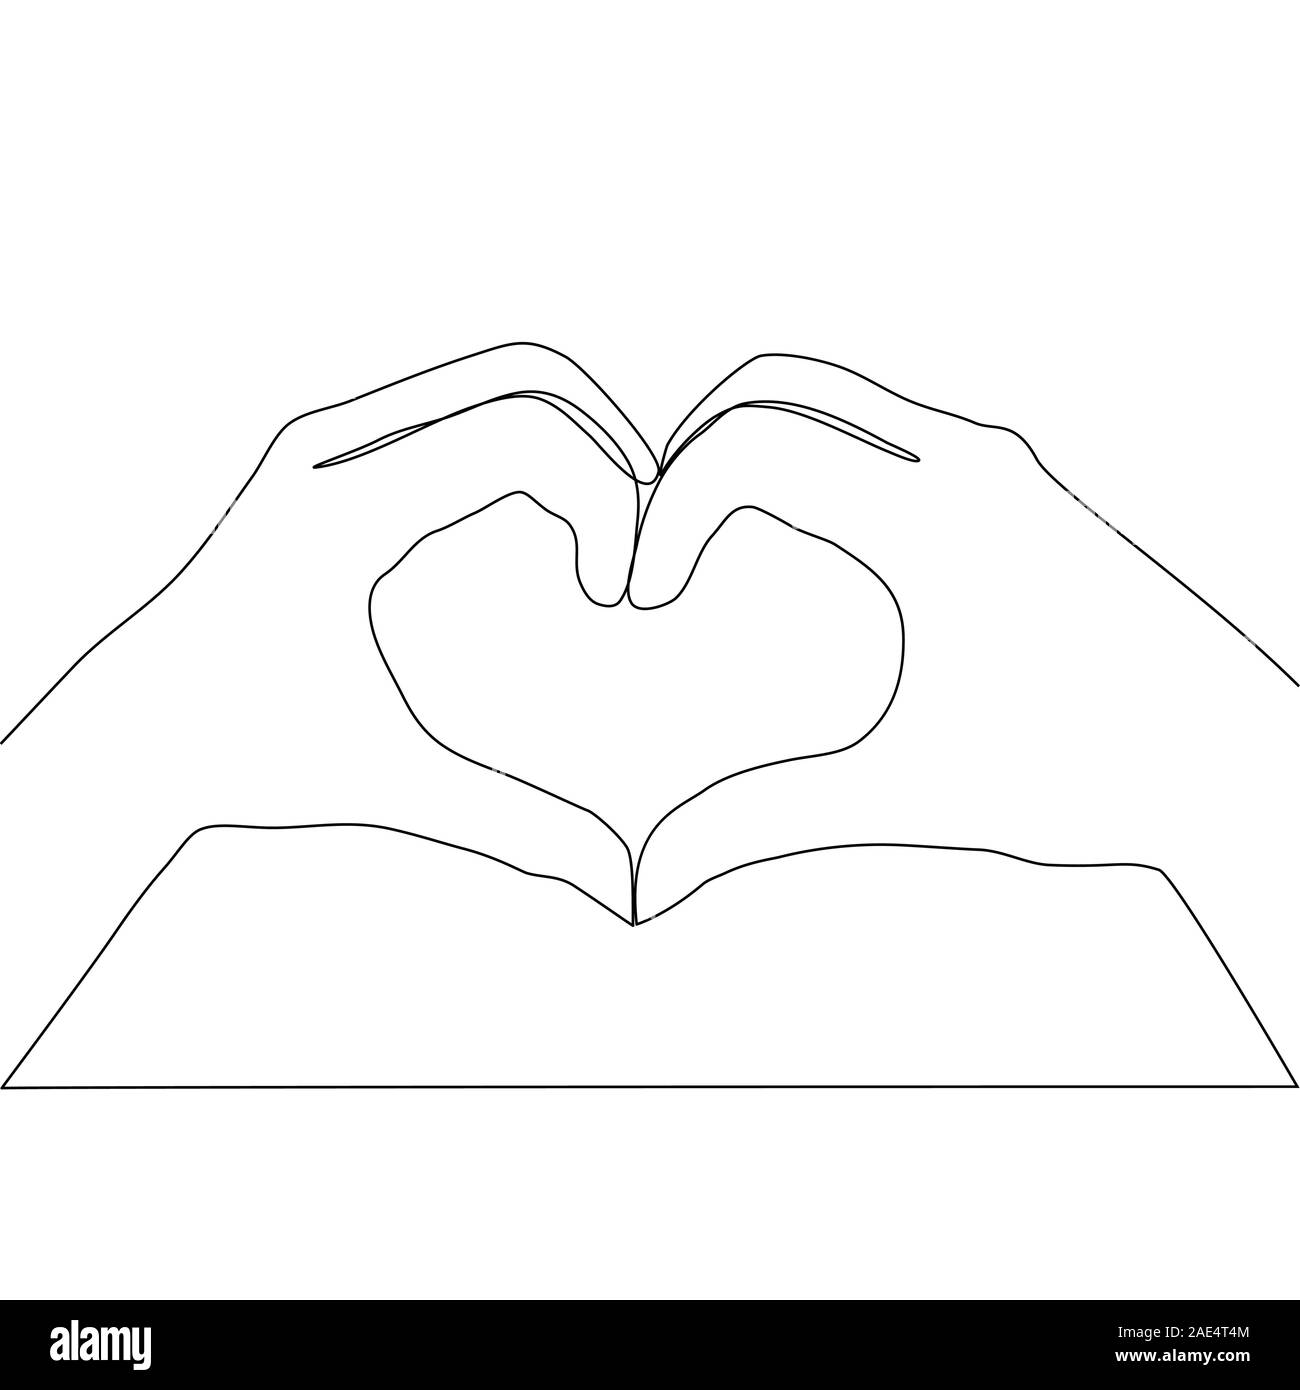 Detalle 20+ imagen dibujos de manos haciendo un corazon